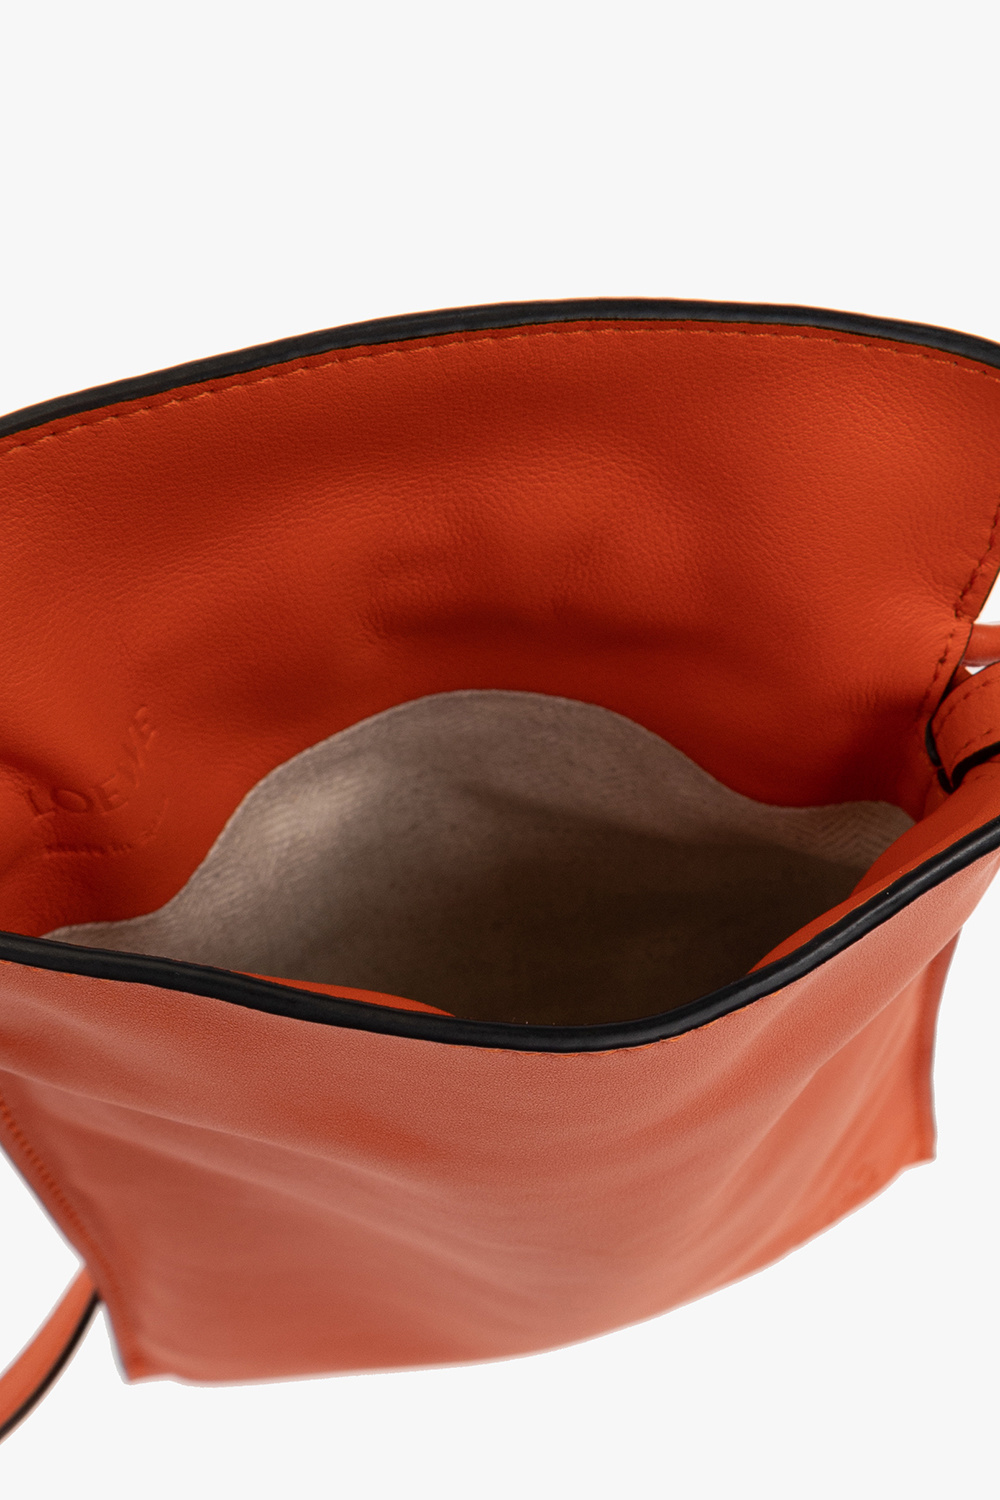 Loewe Red Pocket Shoulder Bag